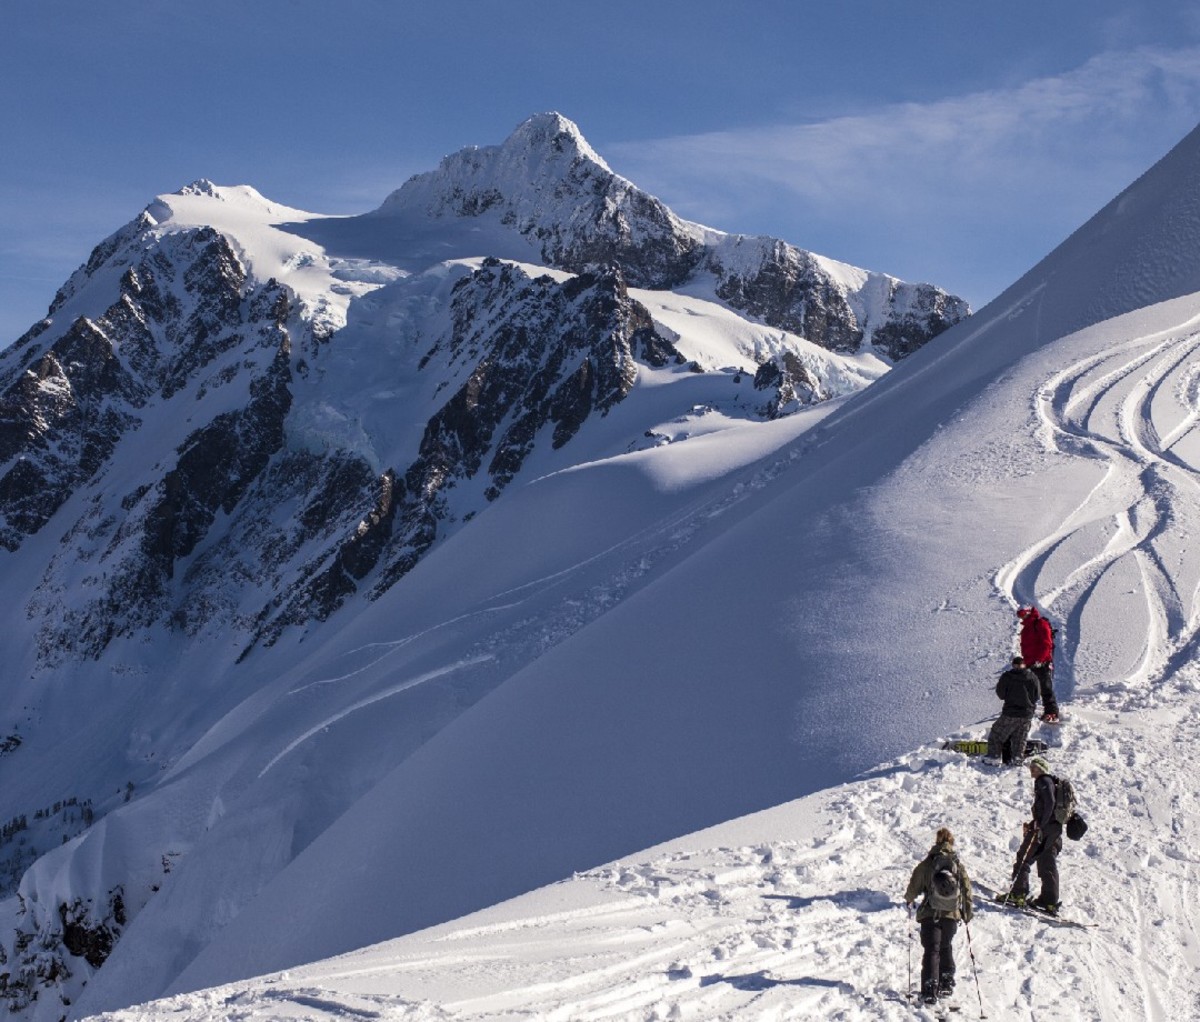 Skiers on Mt. Baker in Washington